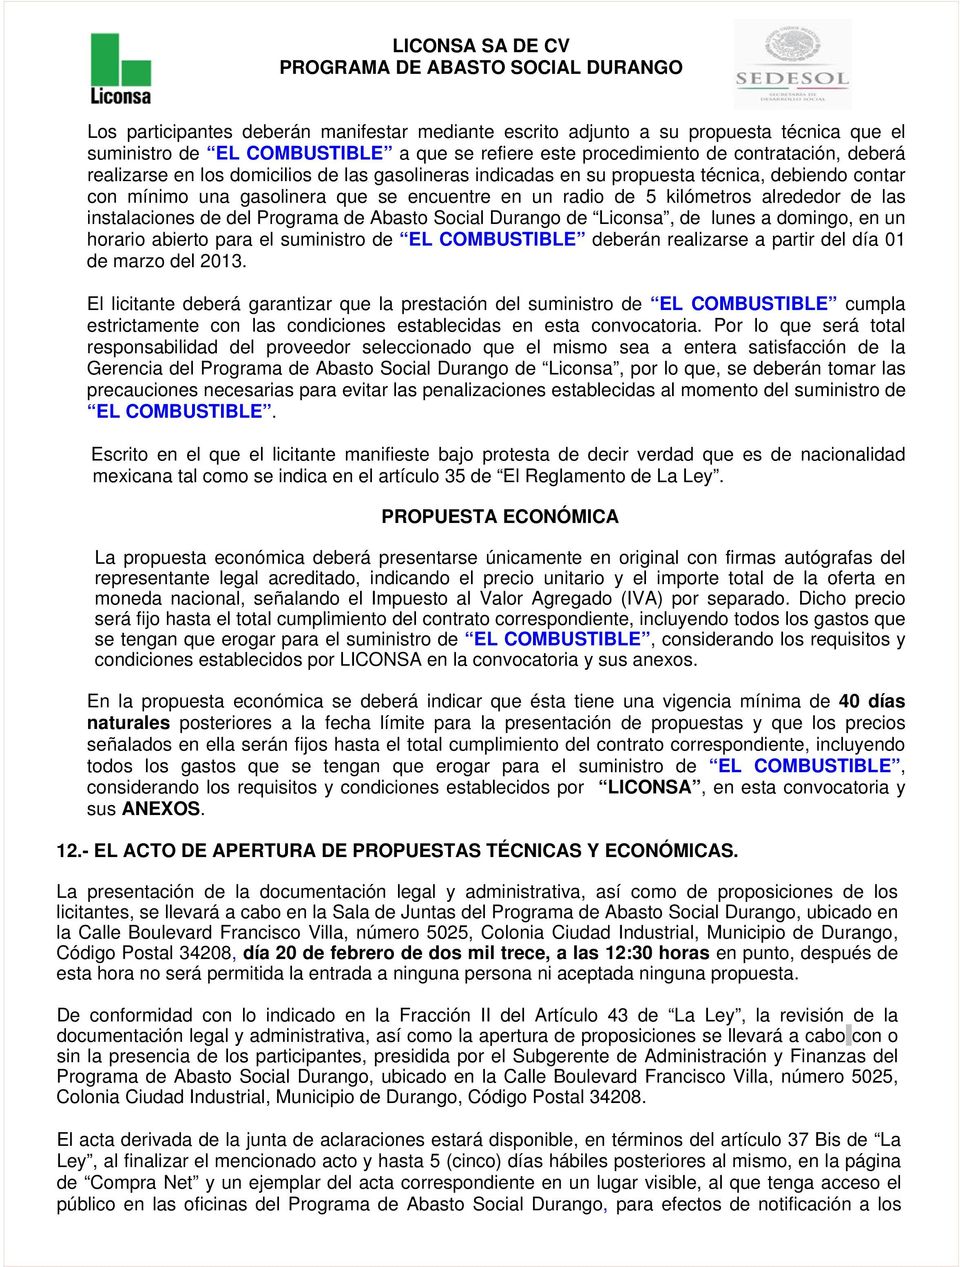 de Abasto Social Durango de Liconsa, de lunes a domingo, en un horario abierto para el suministro de EL COMBUSTIBLE deberán realizarse a partir del día 01 de marzo del 2013.